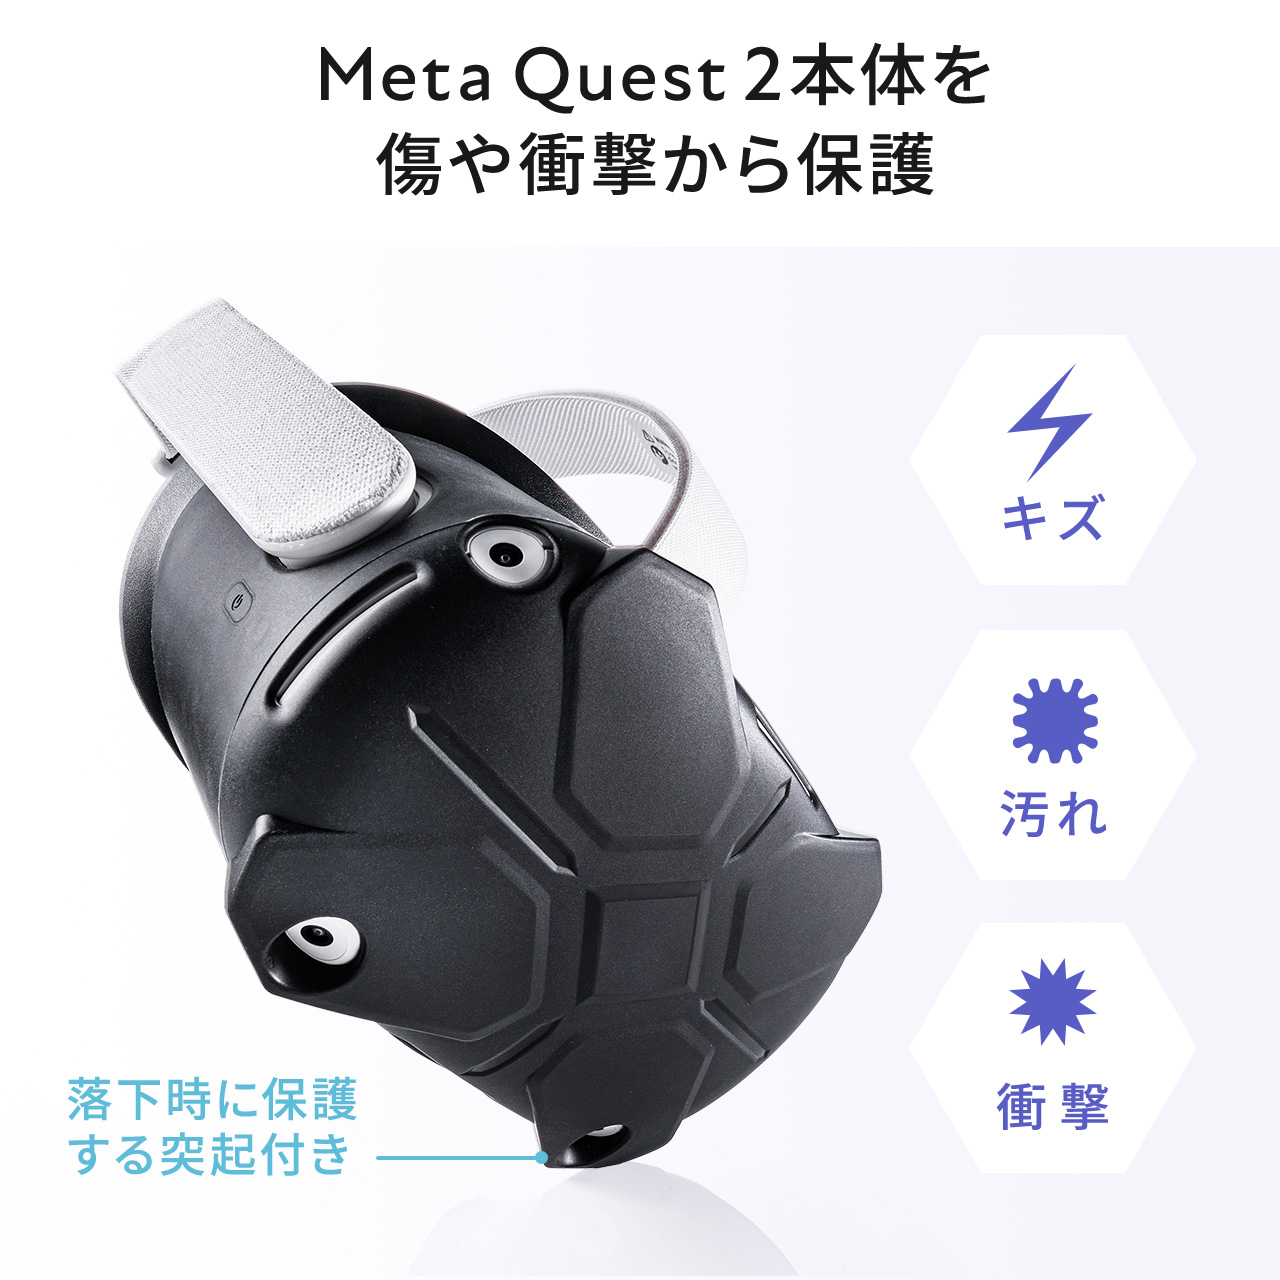 Meta Quest 2 Oculus Quest 2 用シェルカバー シリコン 簡単装着シェル